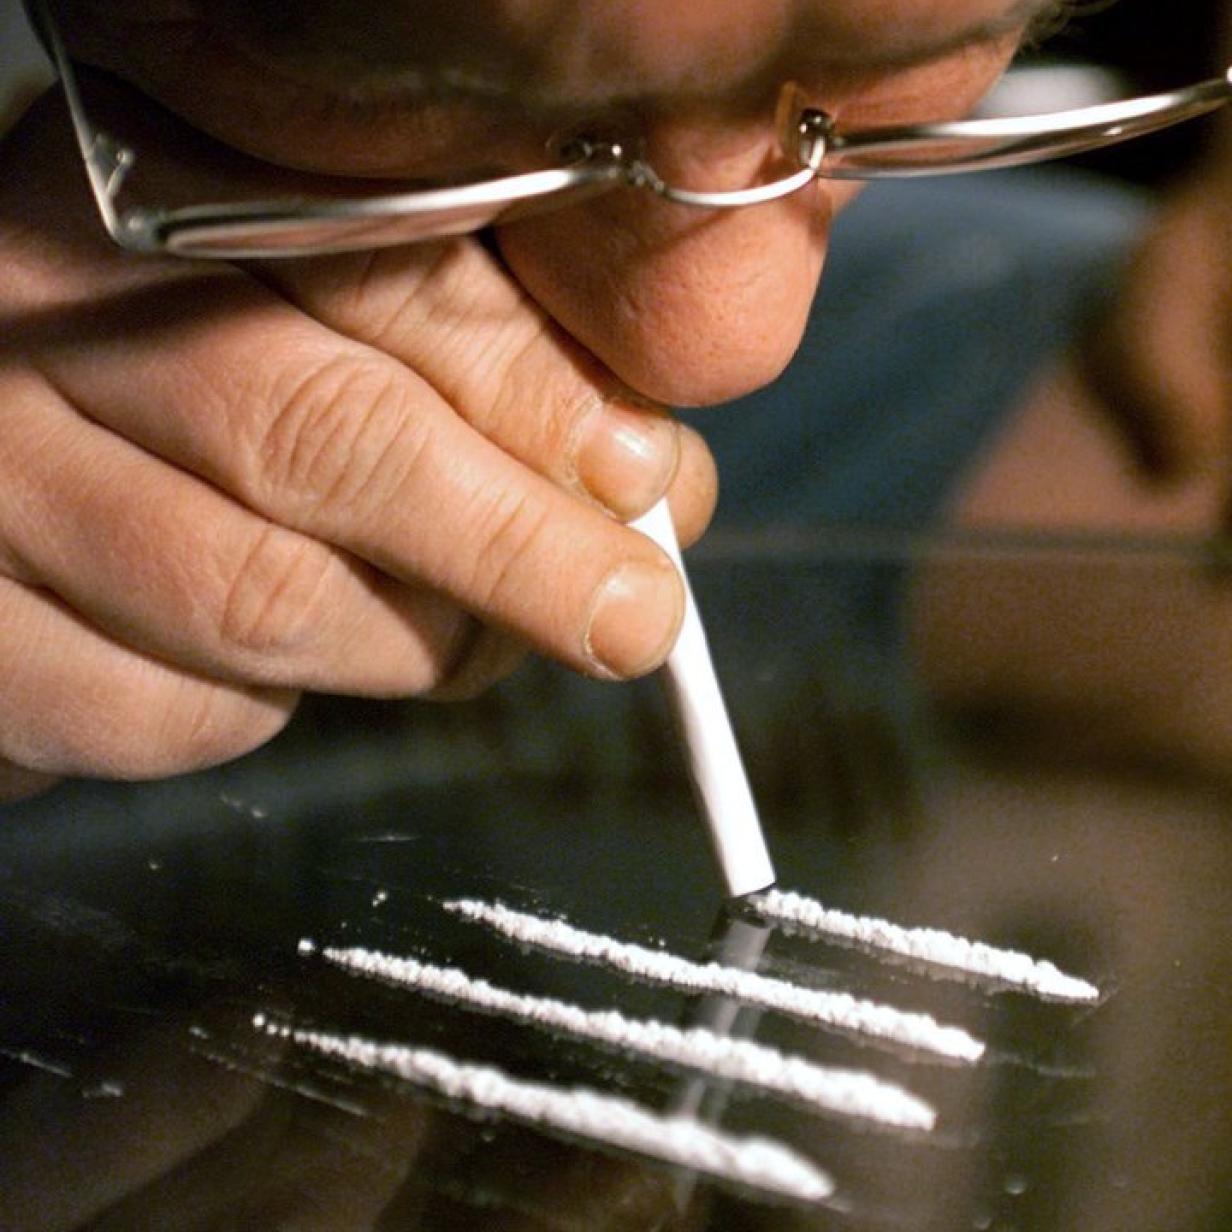 Drogenkonsum stagniert, Kokain im Westen beliebter